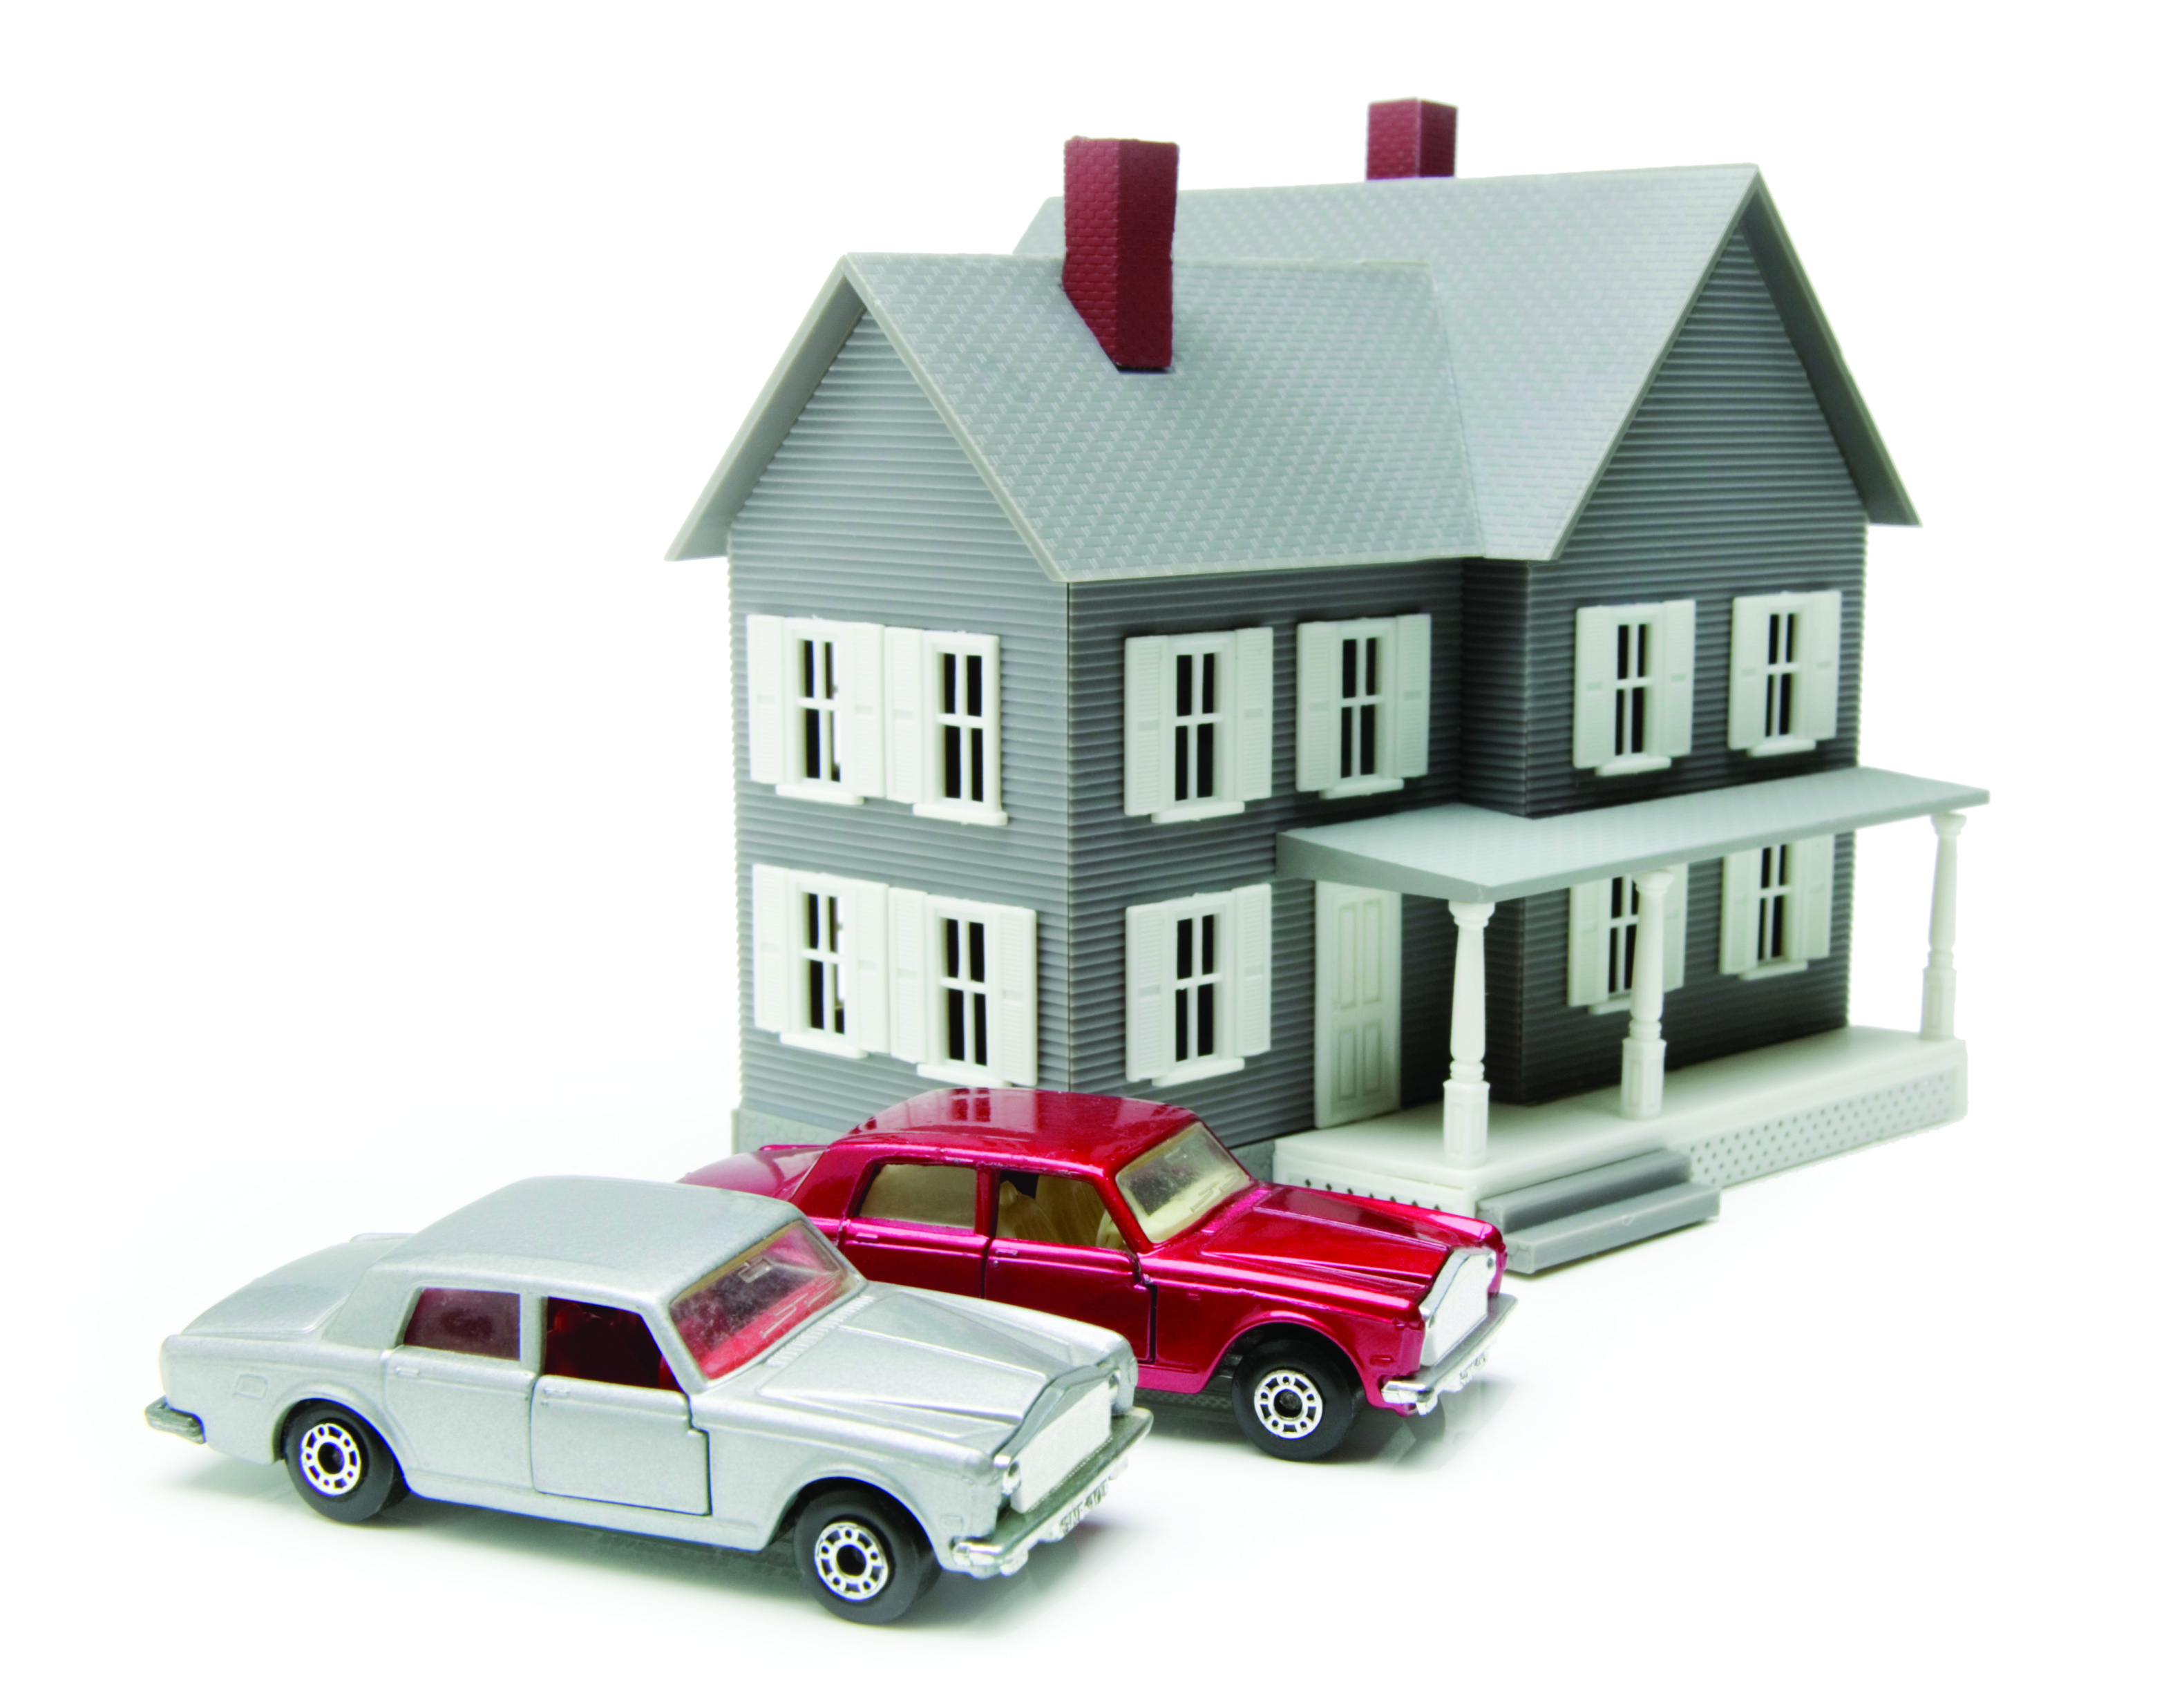 Транспортное средство движимое имущество. Недвижимость и автомобиль. Автомобиль это недвижимое имущество. Оценка имущества движимого и недвижимого имущества. Имущество недвижимость транспортные средства.